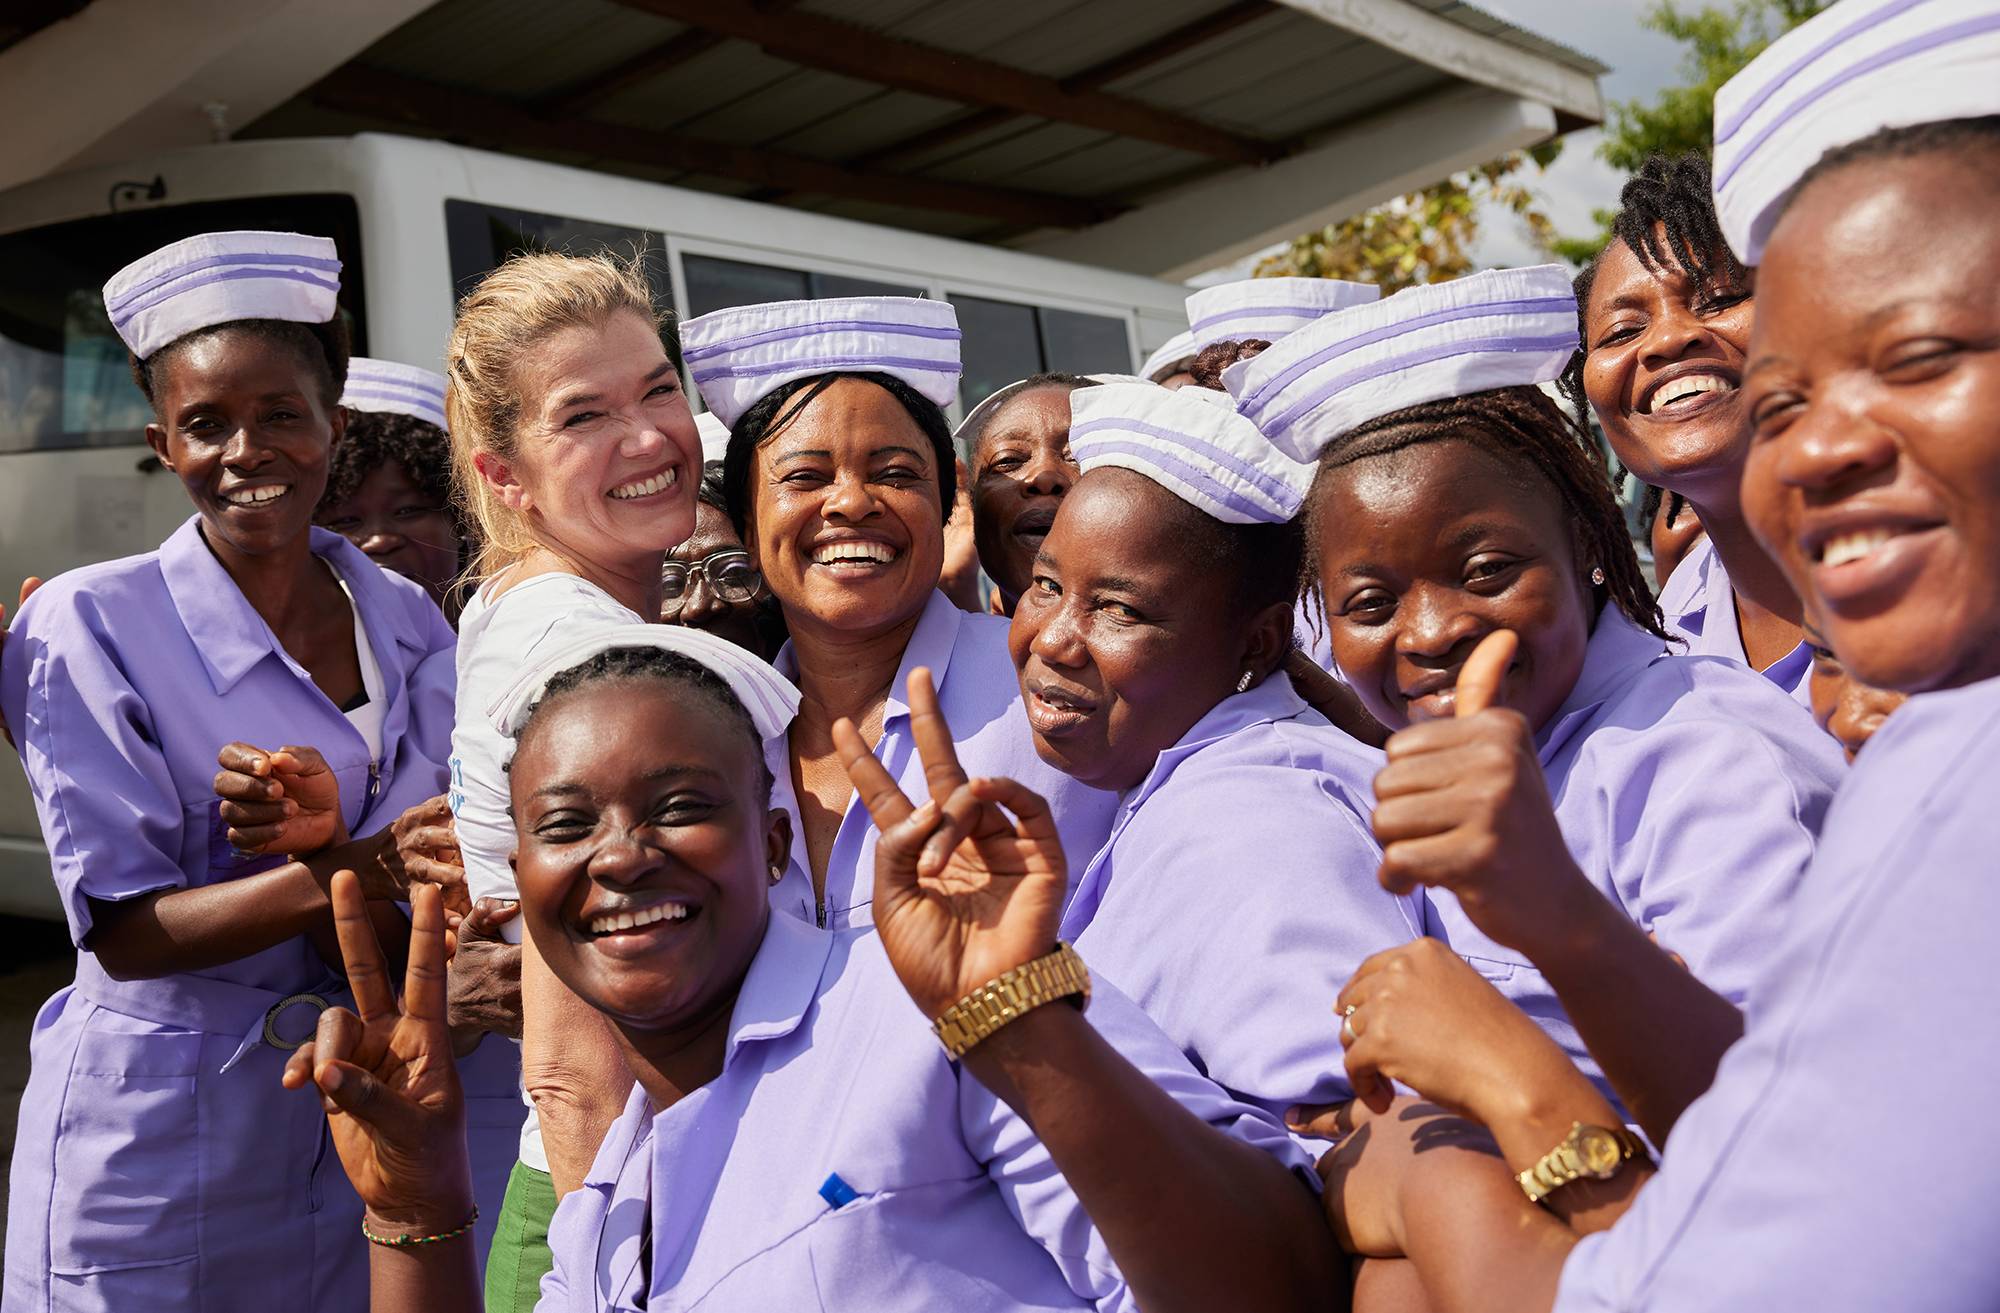 Seit 2003 engagiert sich die Schauspielerin Anke als Engelke Botschafterin von action medeor. In zahlreichen Reisen überzeugte sie sich von der Arbeit des Hilfswerks wie hier in Sierra Leone, wo action medeor eine Hebammenschule unterstützt. 